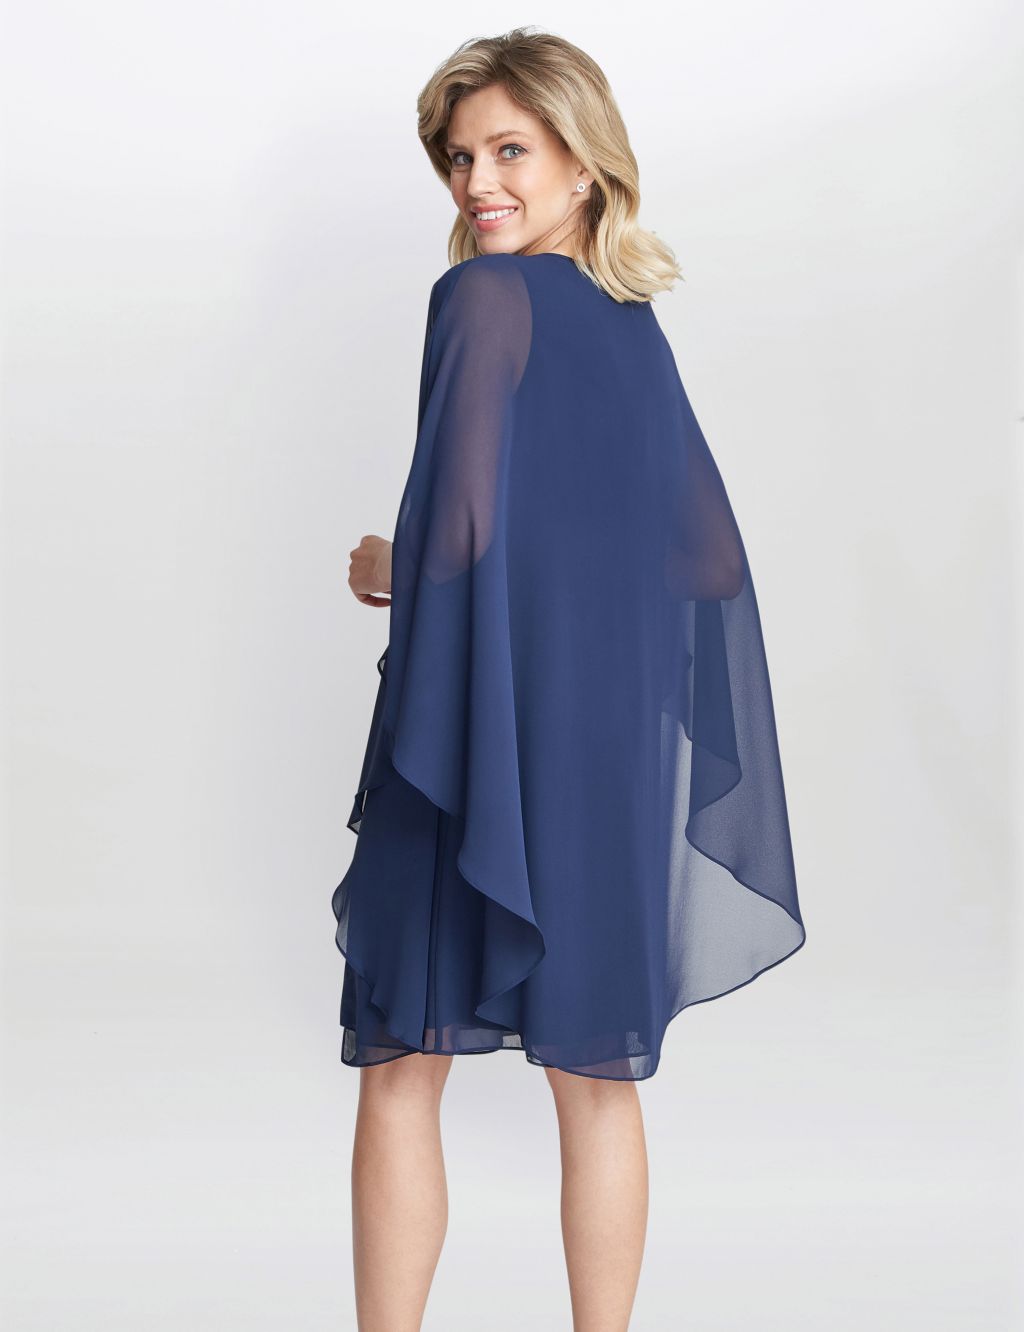 Chiffon Embellished Shift Dress with Cape | Gina Bacconi | M&S